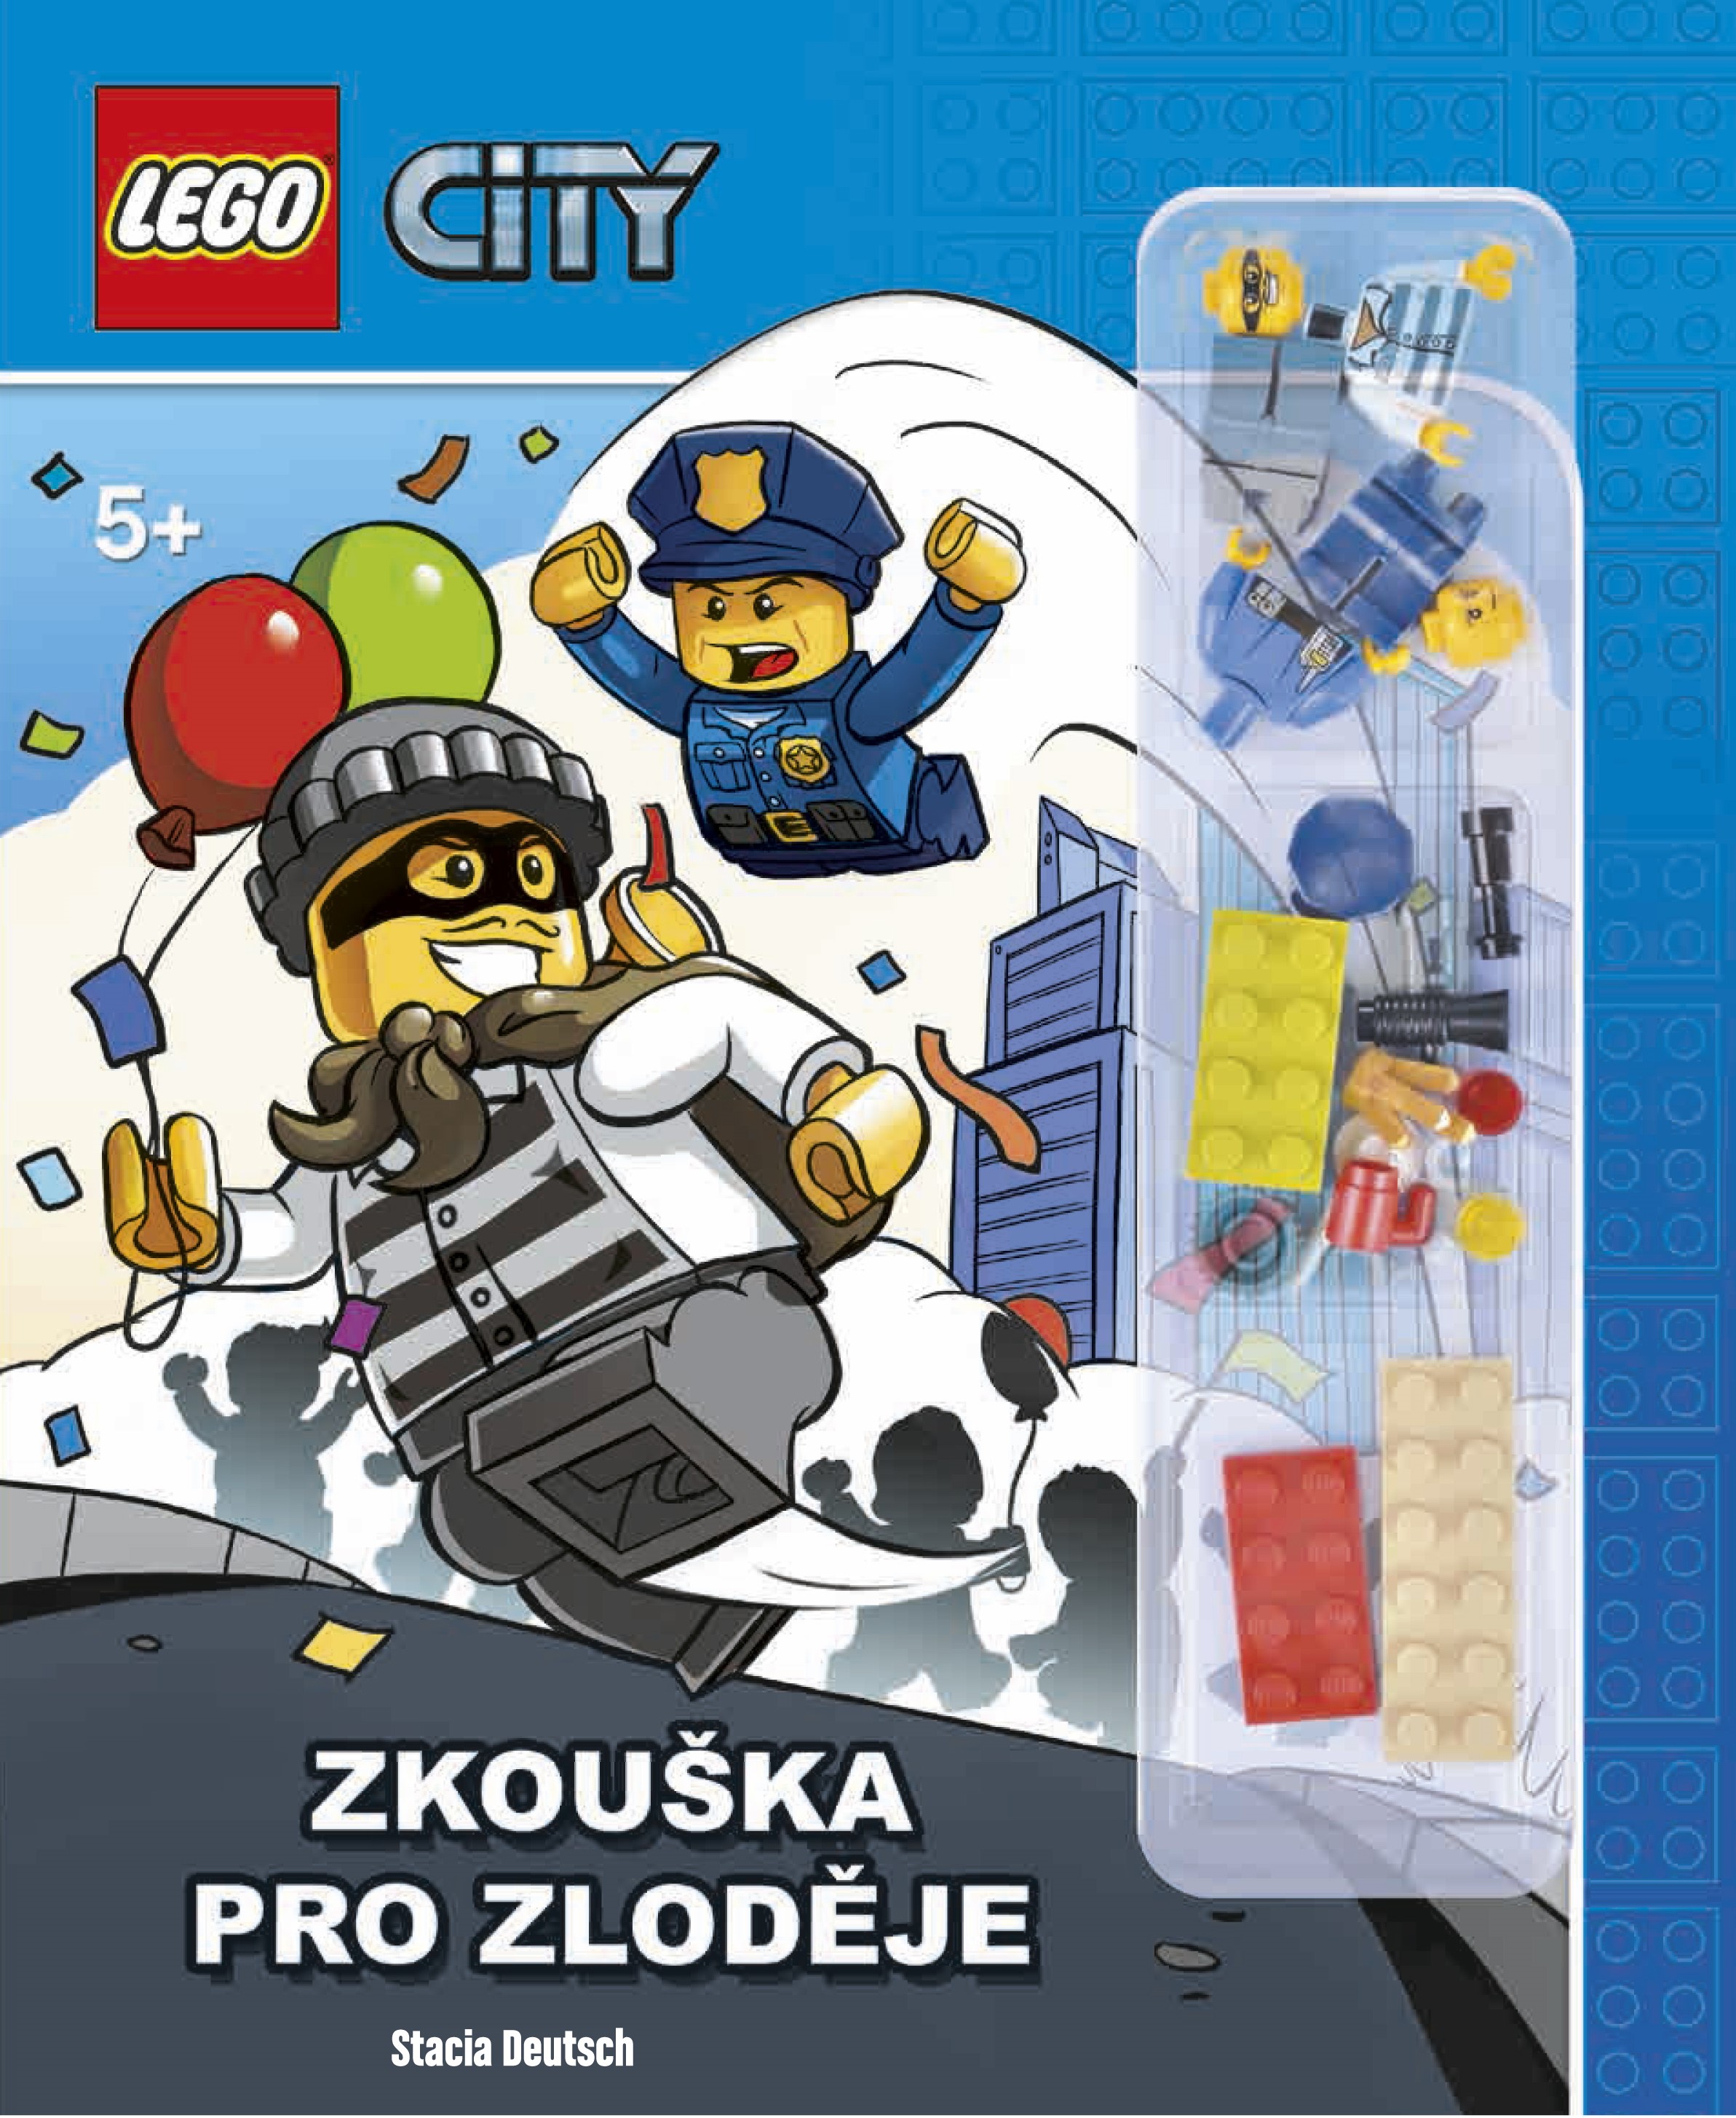 LEGO CITY - ZKOUŠKA PRO ZLODĚJE